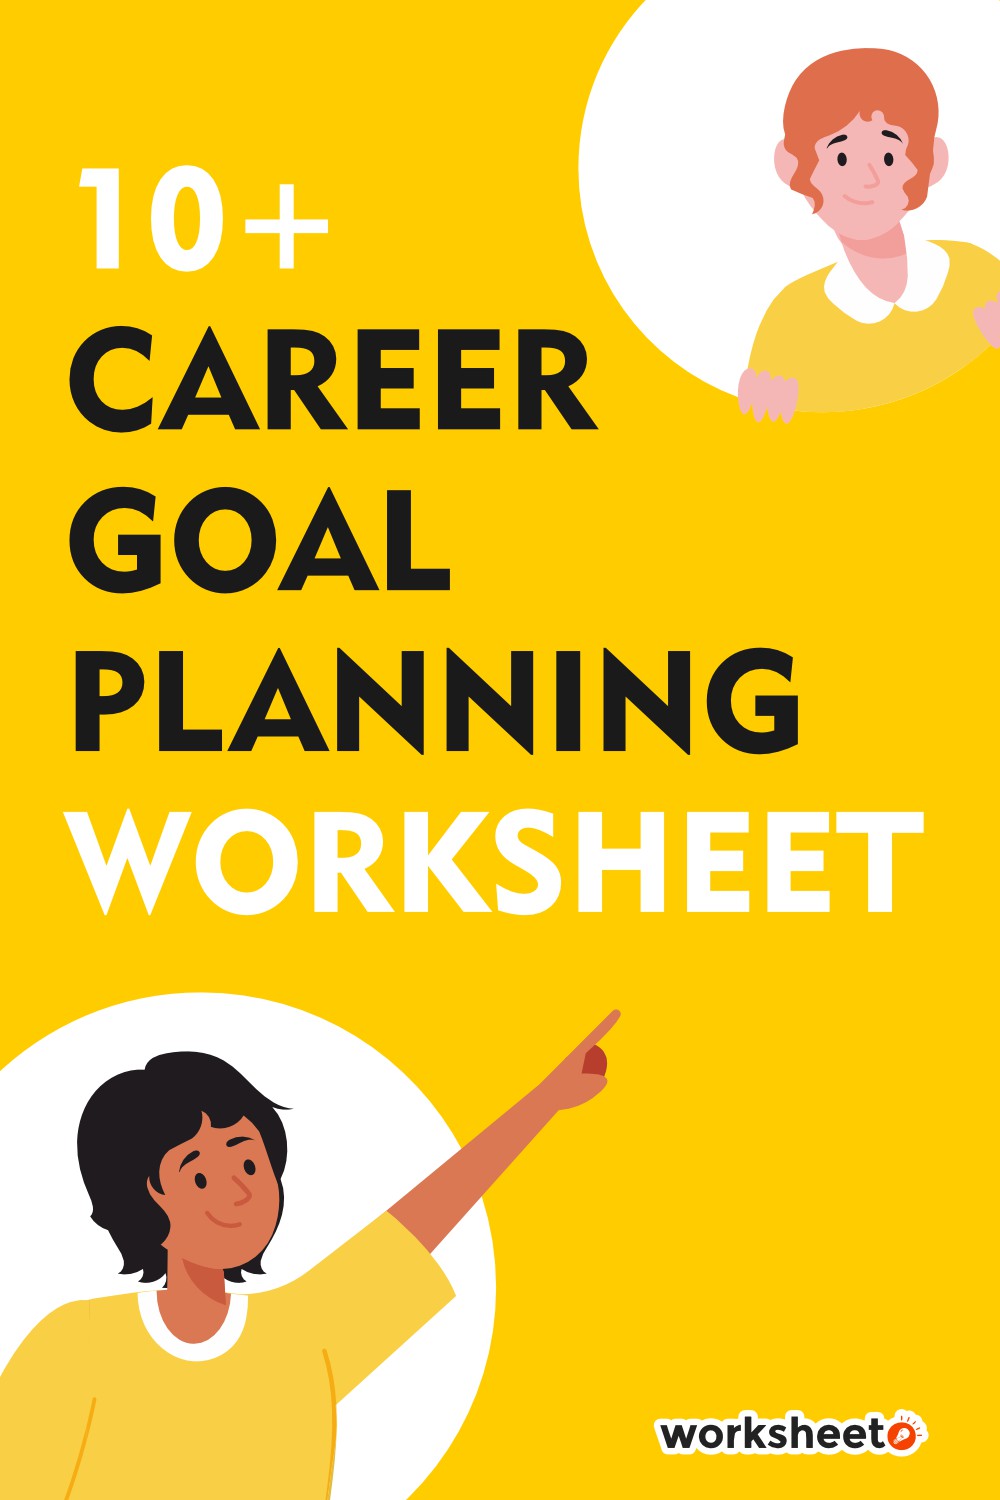 15 Images of Career Goal Planning Worksheet